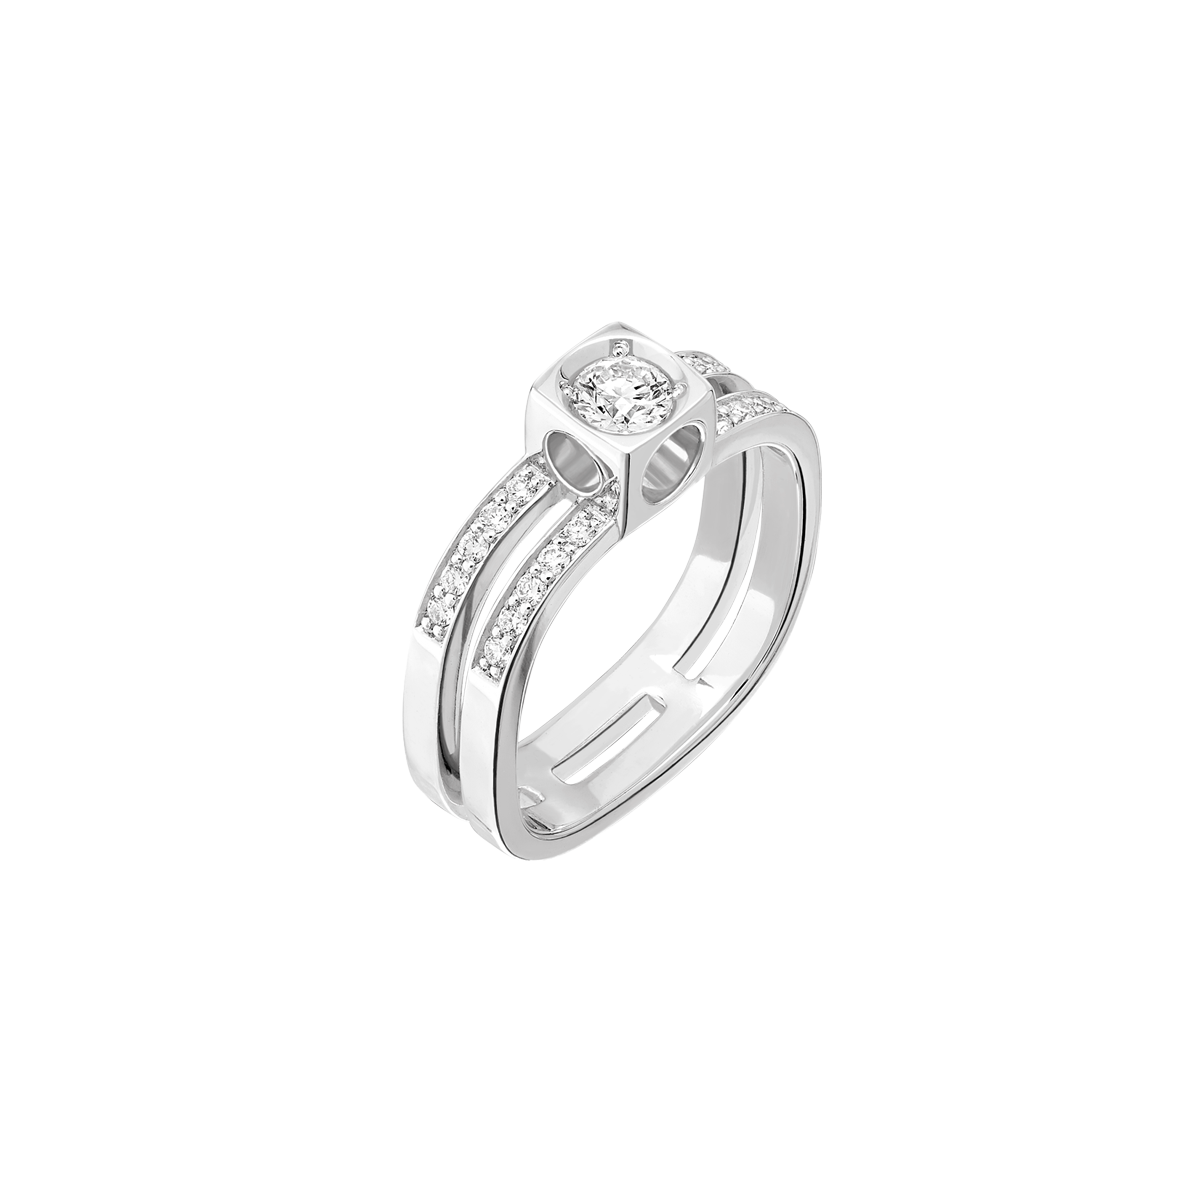 Bague Le Cube Diamant grand modèle pavée or blanc et diamants Menottes dinh van Référence :  208912 -1